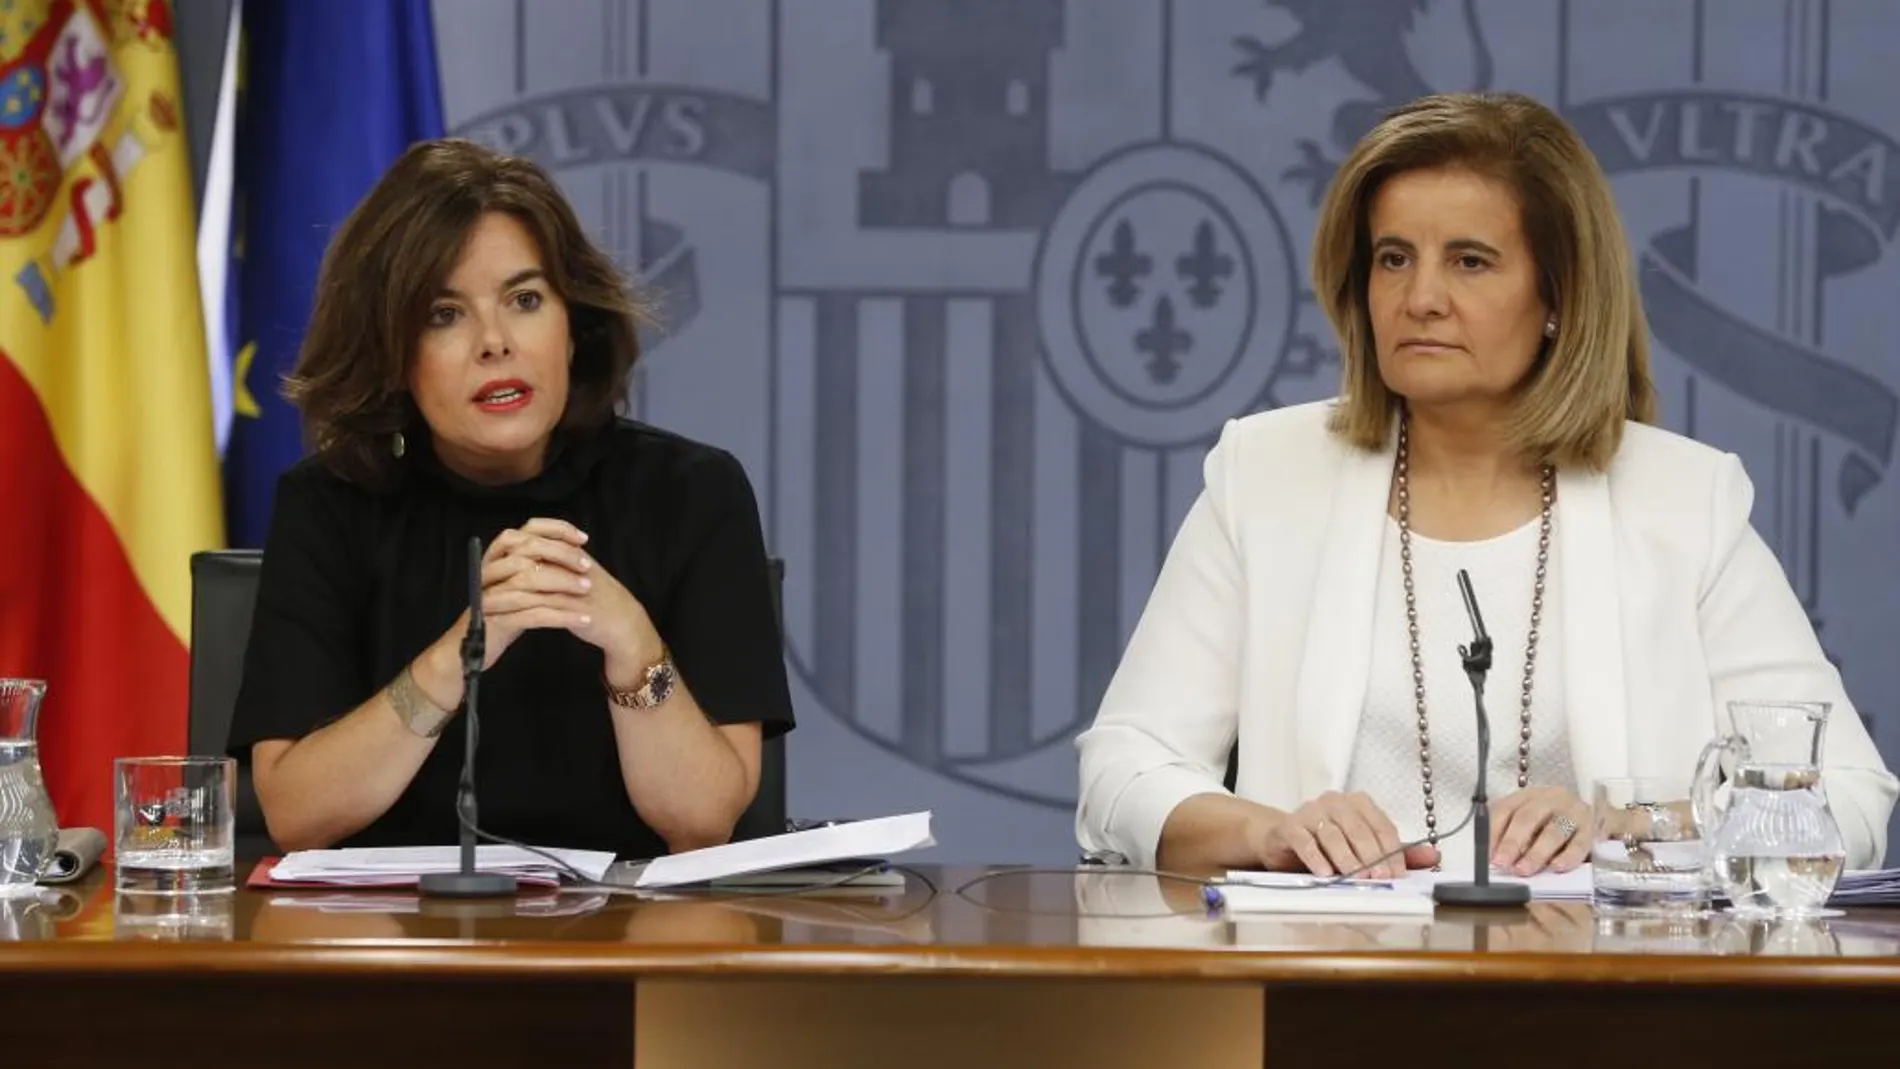 La vicepresidenta del Gobierno en funciones, Soraya Sáenz de Santamaría,iz., acompañada de la ministra de Empleo en funciones, Fátima Báñez.